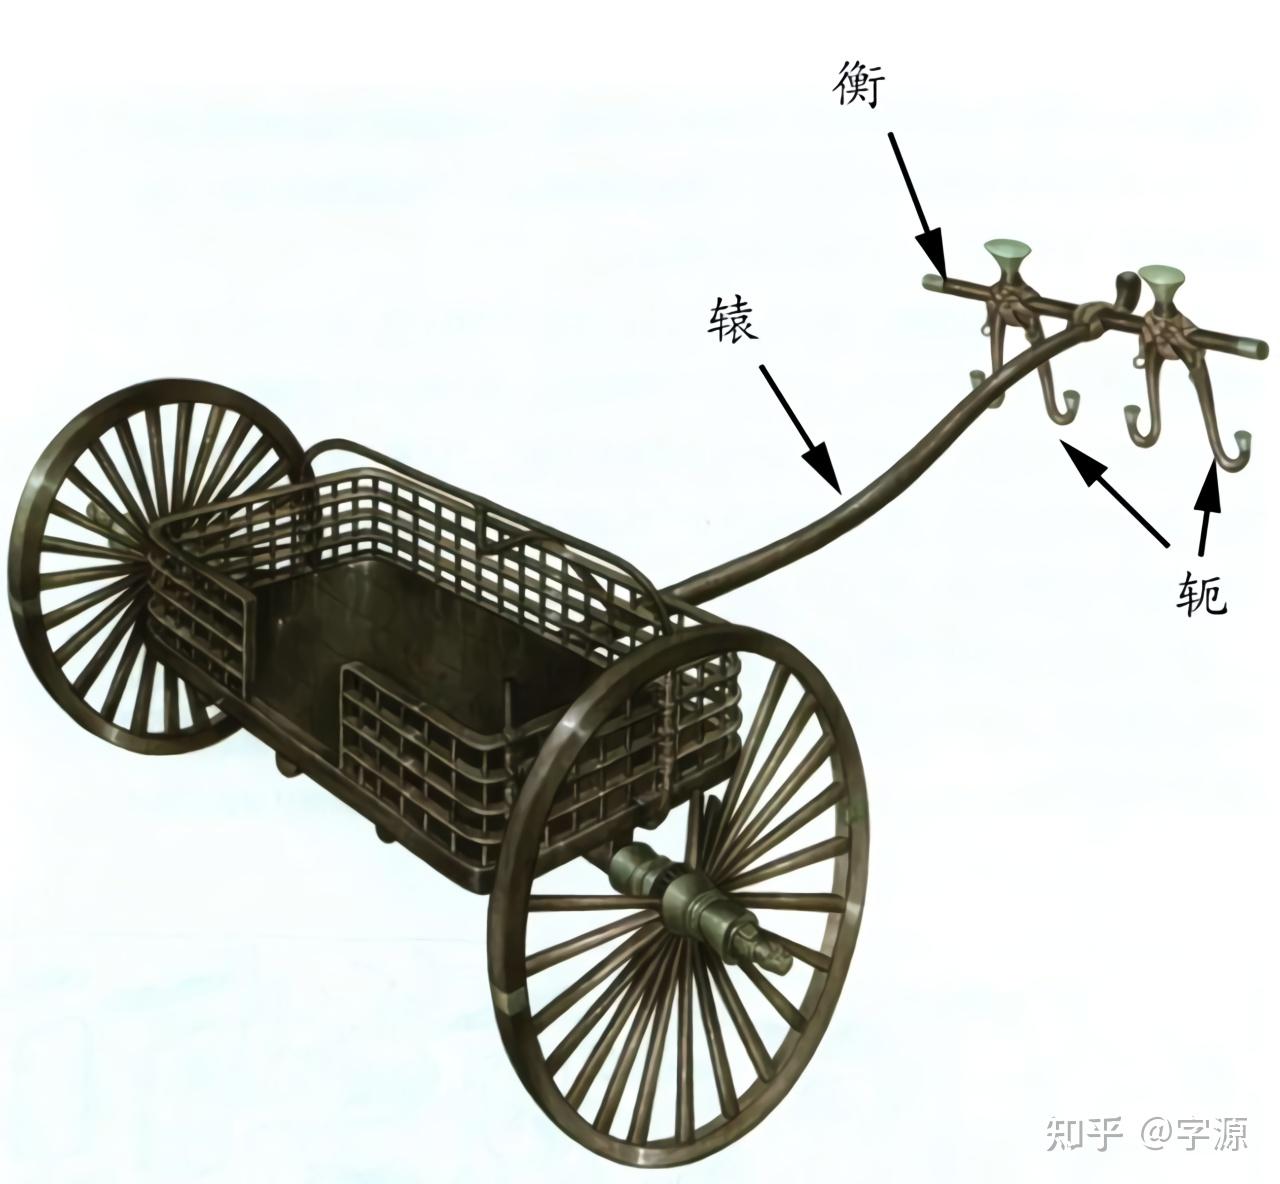 原来金文是殷商时期出现的,而有趣的是,在商朝,马车是有规定的形制的